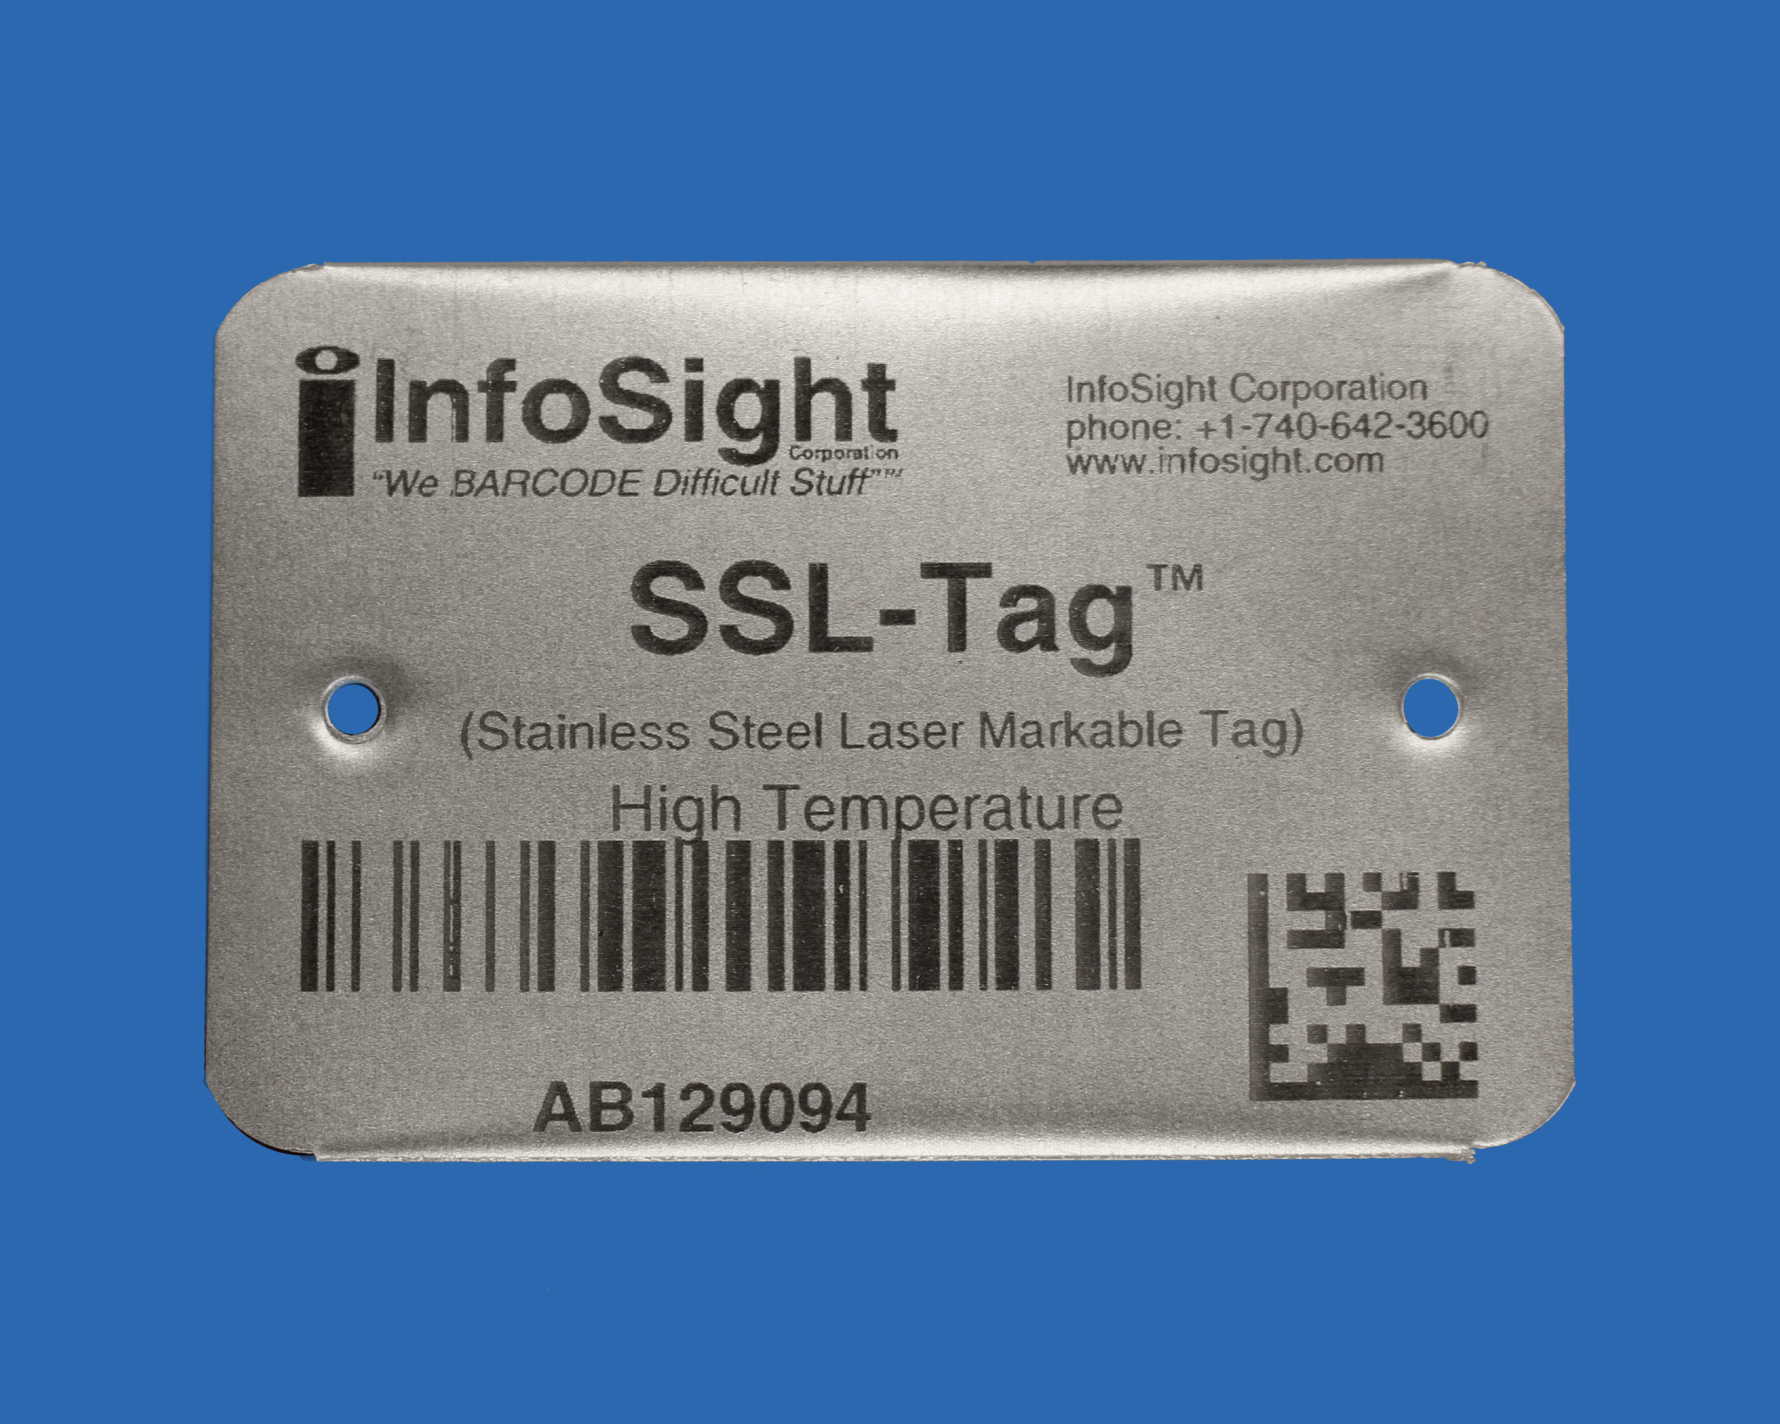 SSL-Tag™ Metal ID Tag